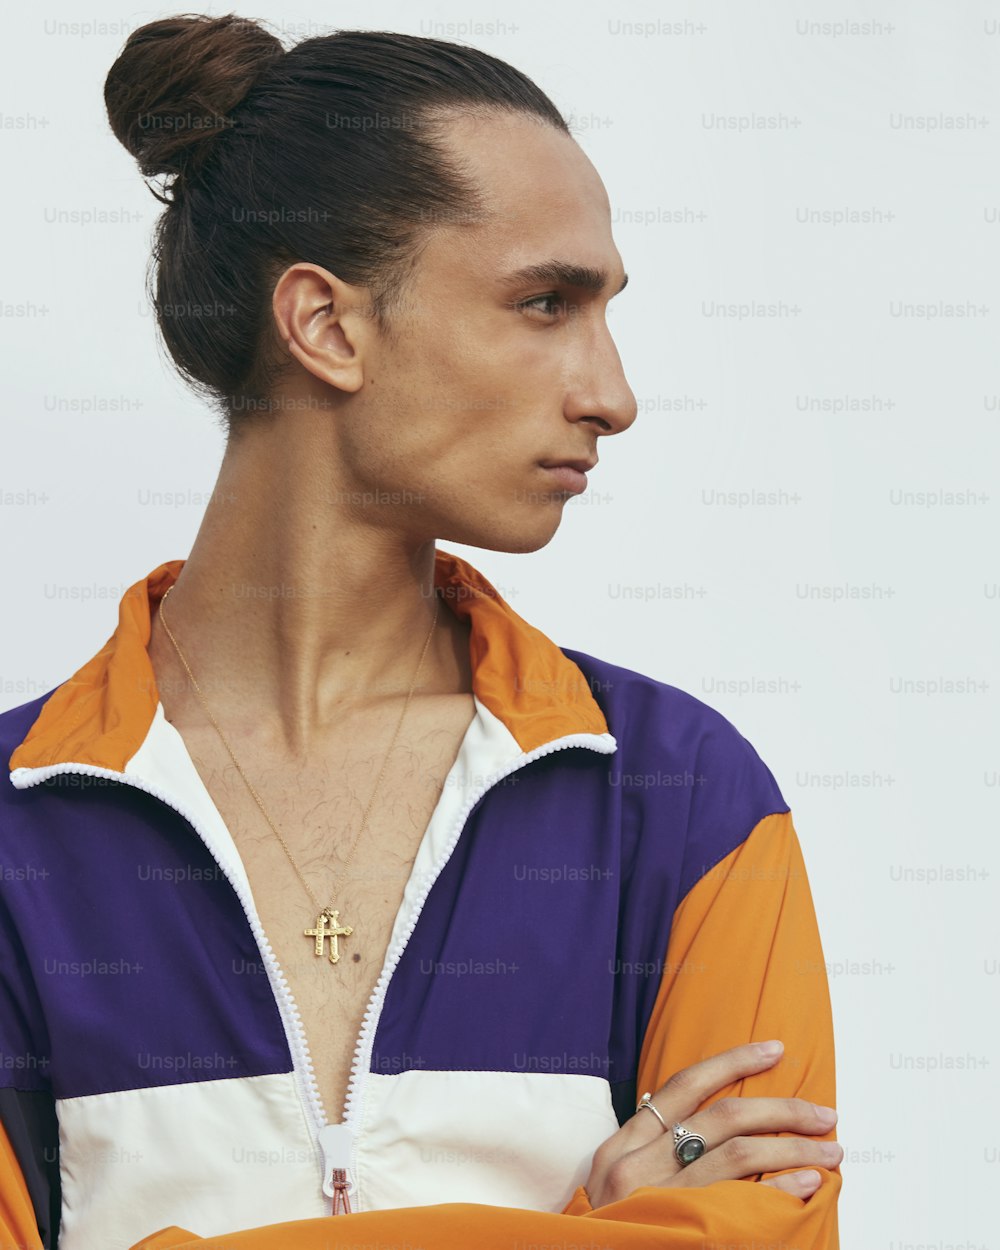 Un uomo con le braccia incrociate che indossa una giacca arancione e viola